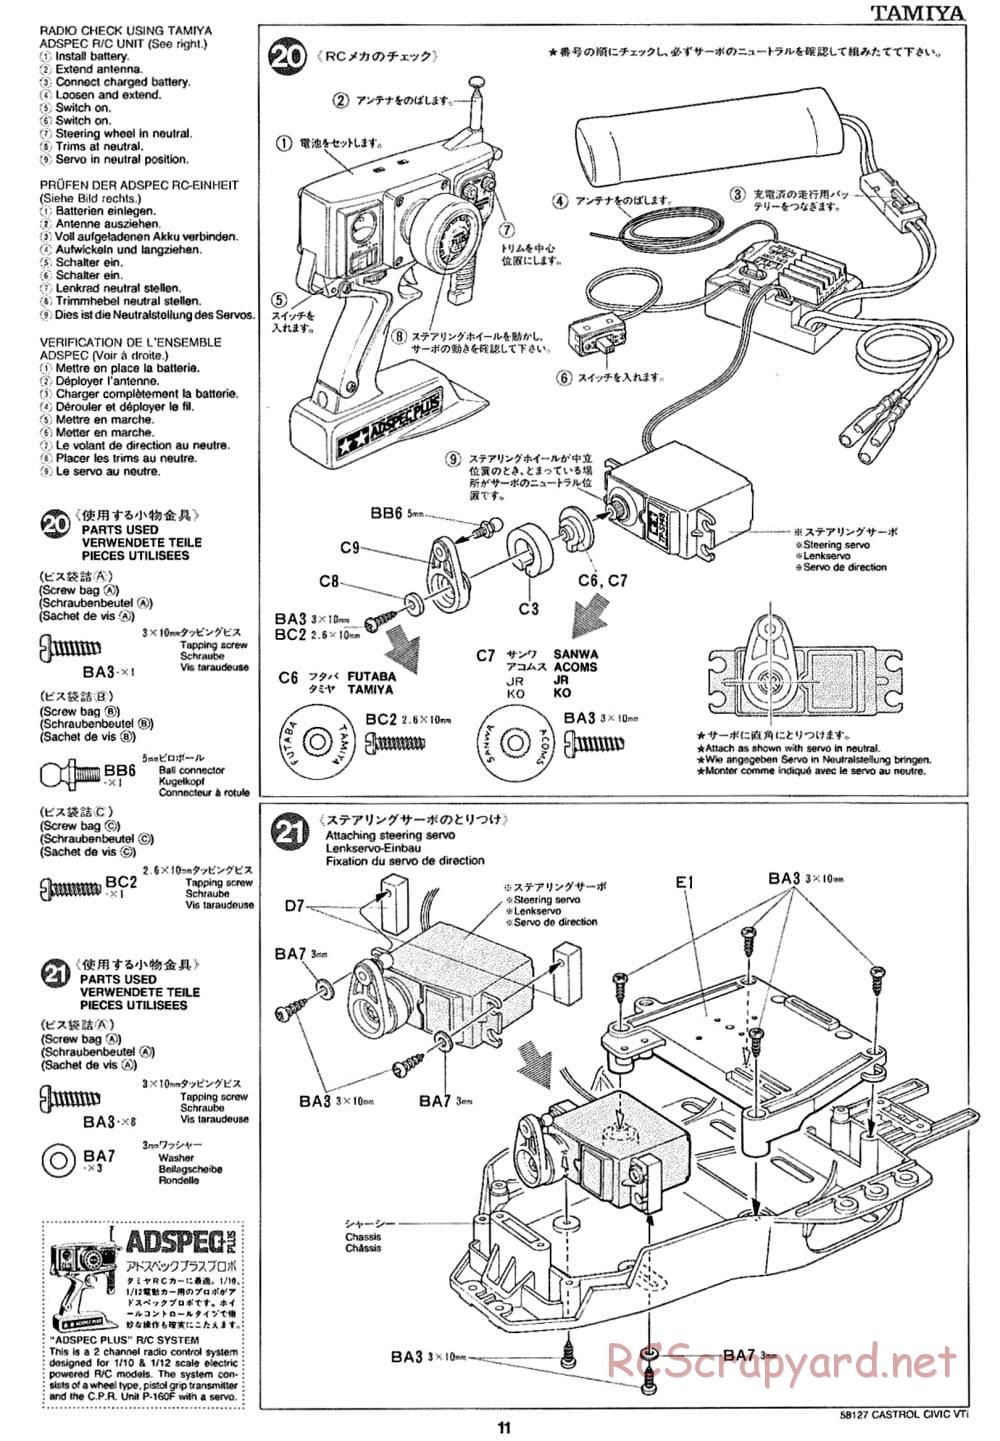 Tamiya - Castrol Honda Civic VTi - FF-01 Chassis - Manual - Page 11